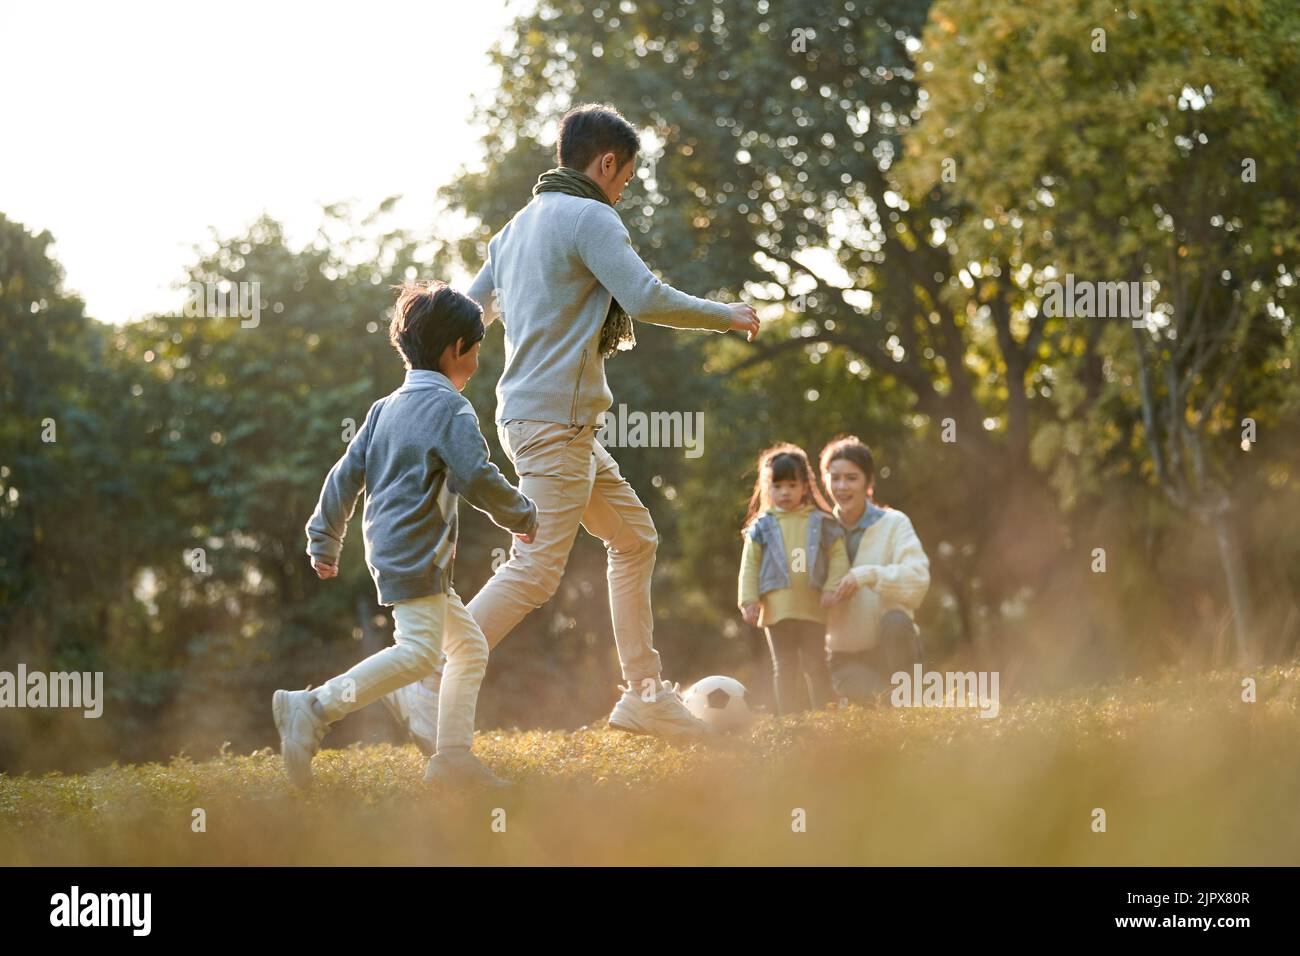 père et fils asiatiques jouant au football à l'extérieur dans le parc tandis que la mère et la fille regardent sur le côté Banque D'Images